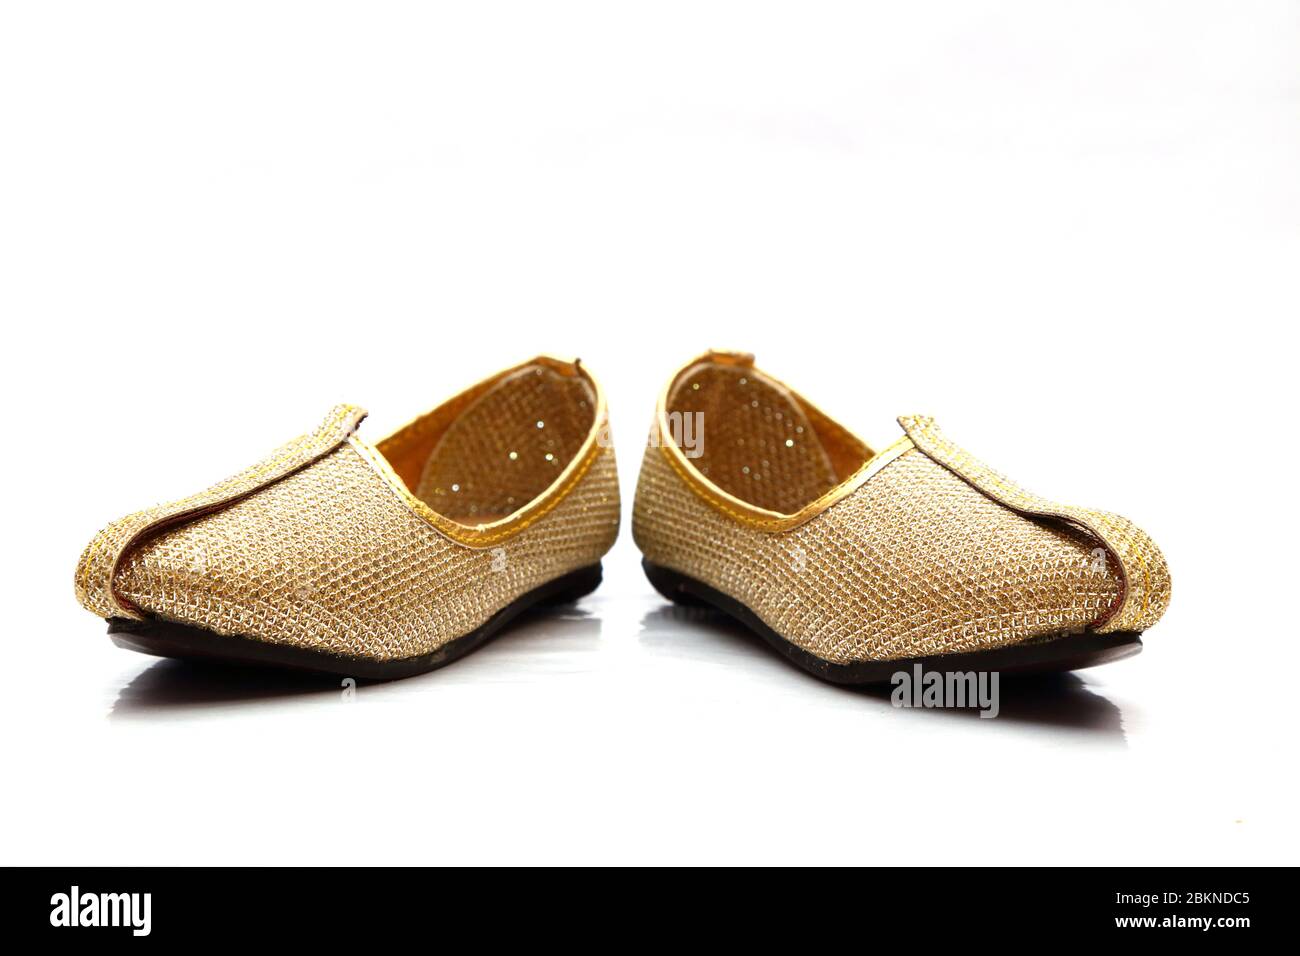 Traditionelle Schuhe oder Jutis für den indischen Bräutigam Stockfotografie  - Alamy